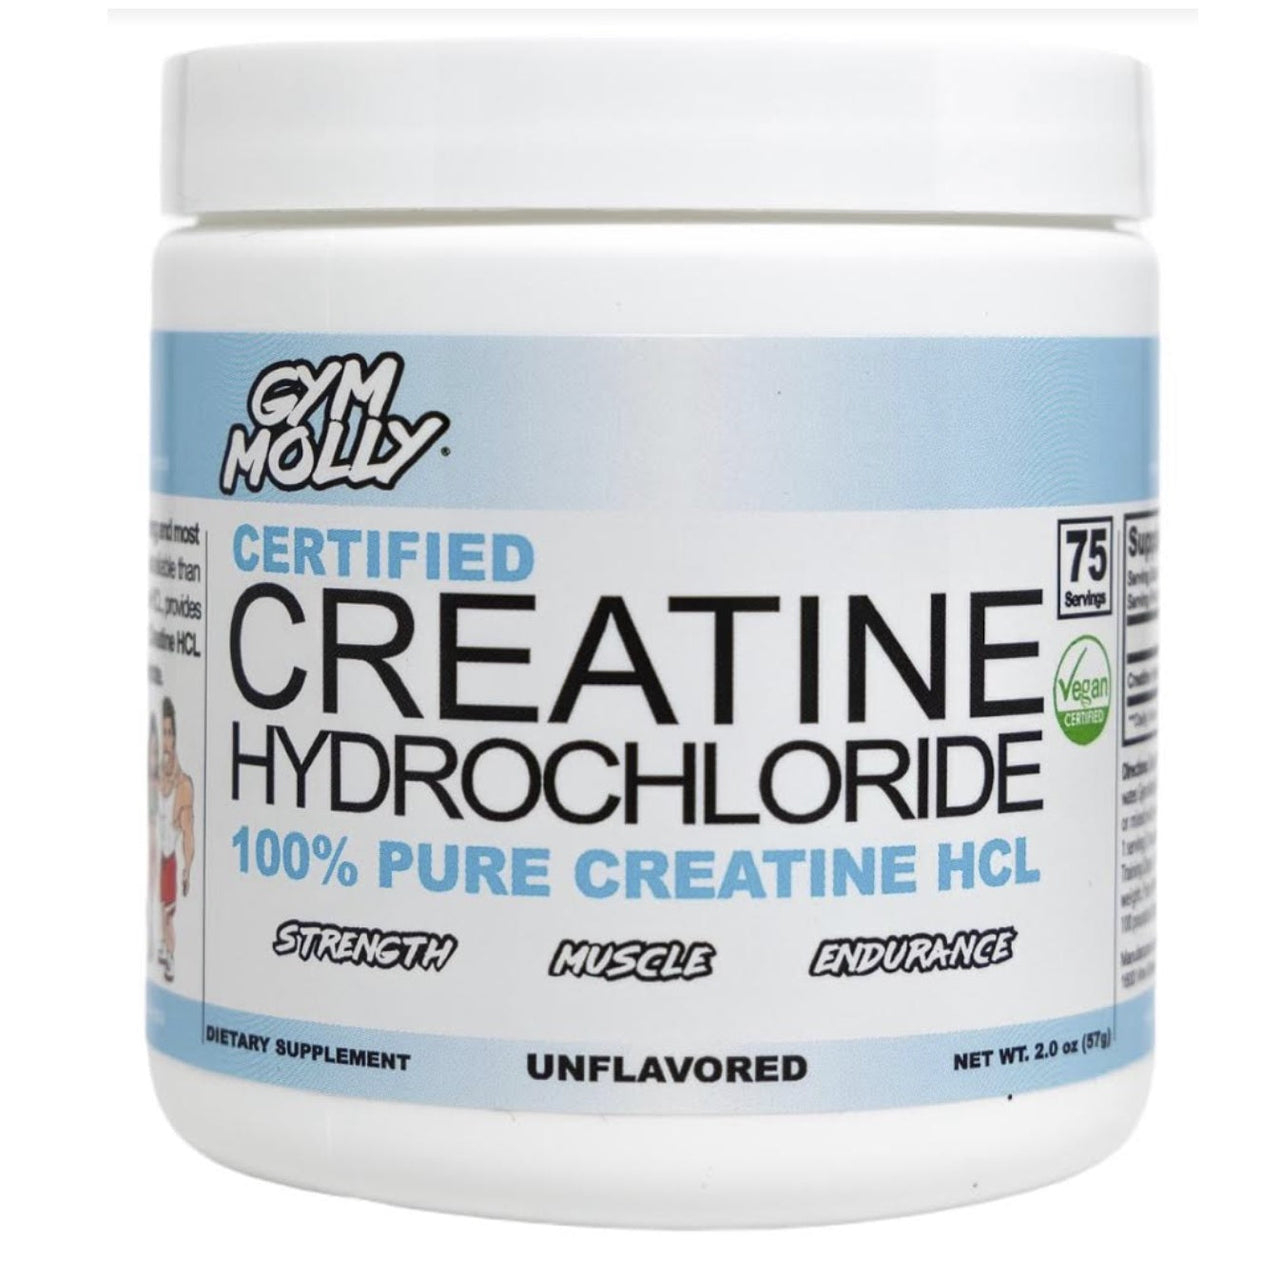 Gym Molly Creatine Hydrochloride Powder (Vegan)